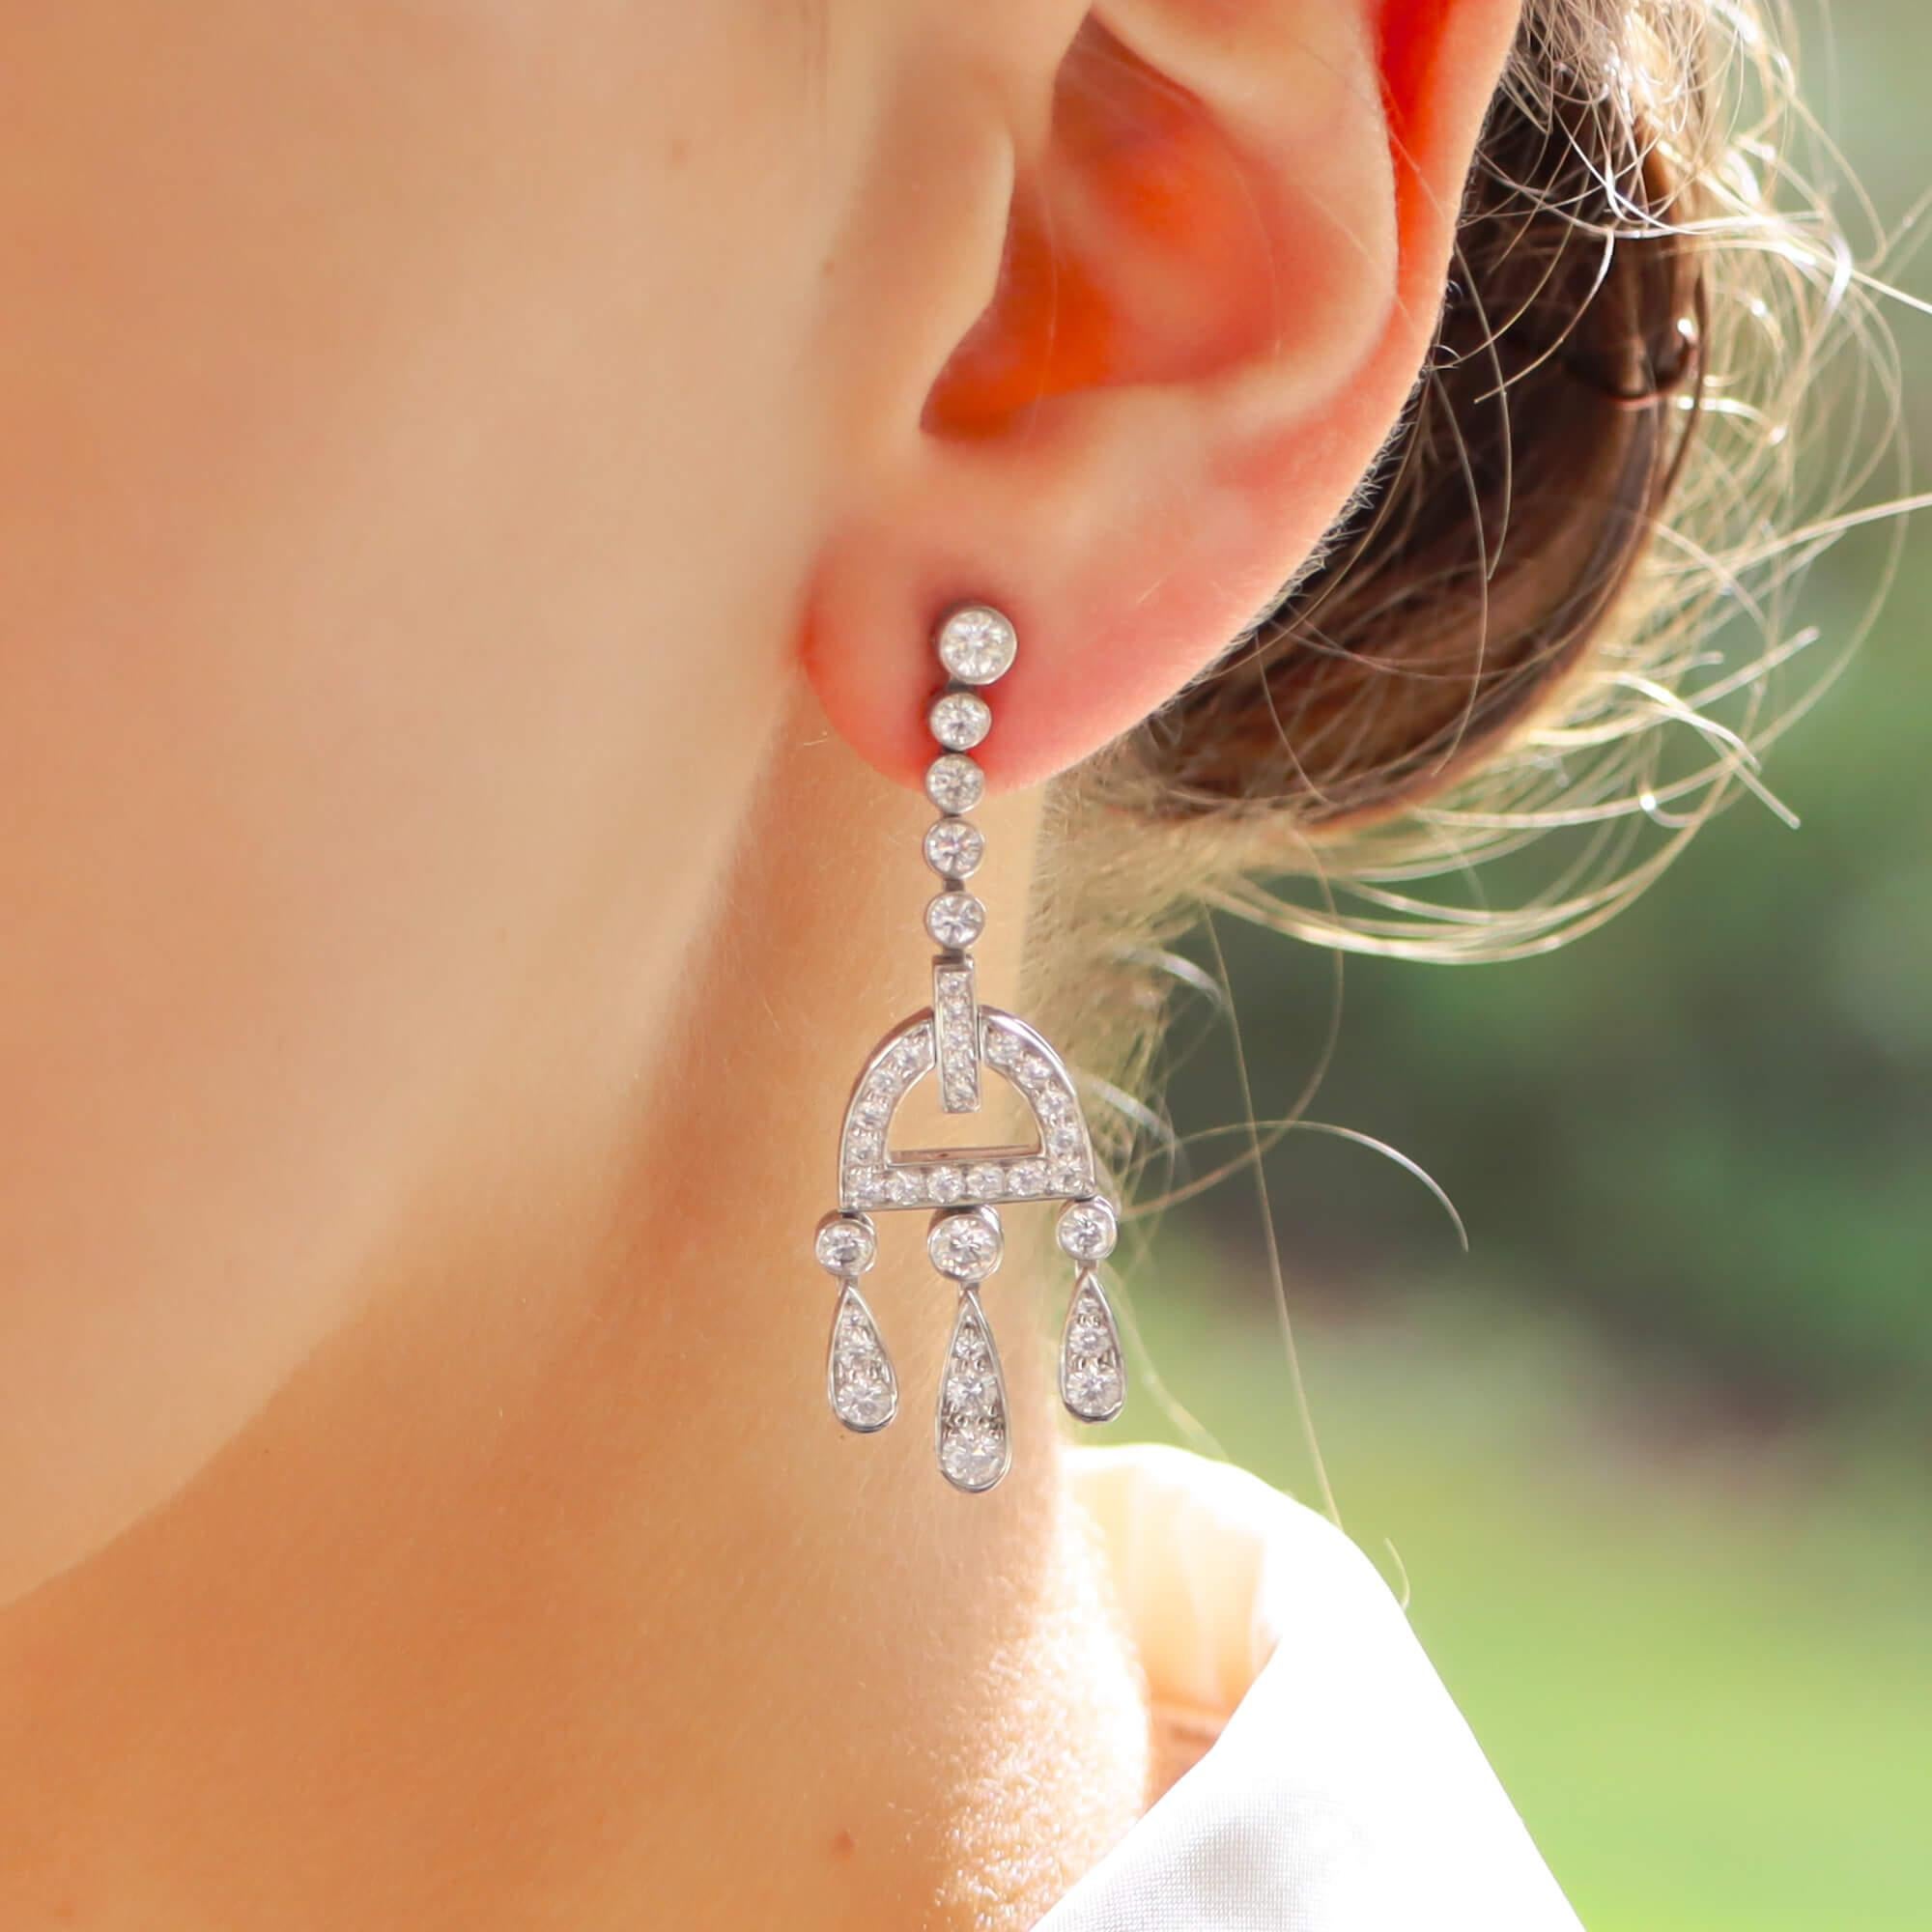 tiffany inspired earrings